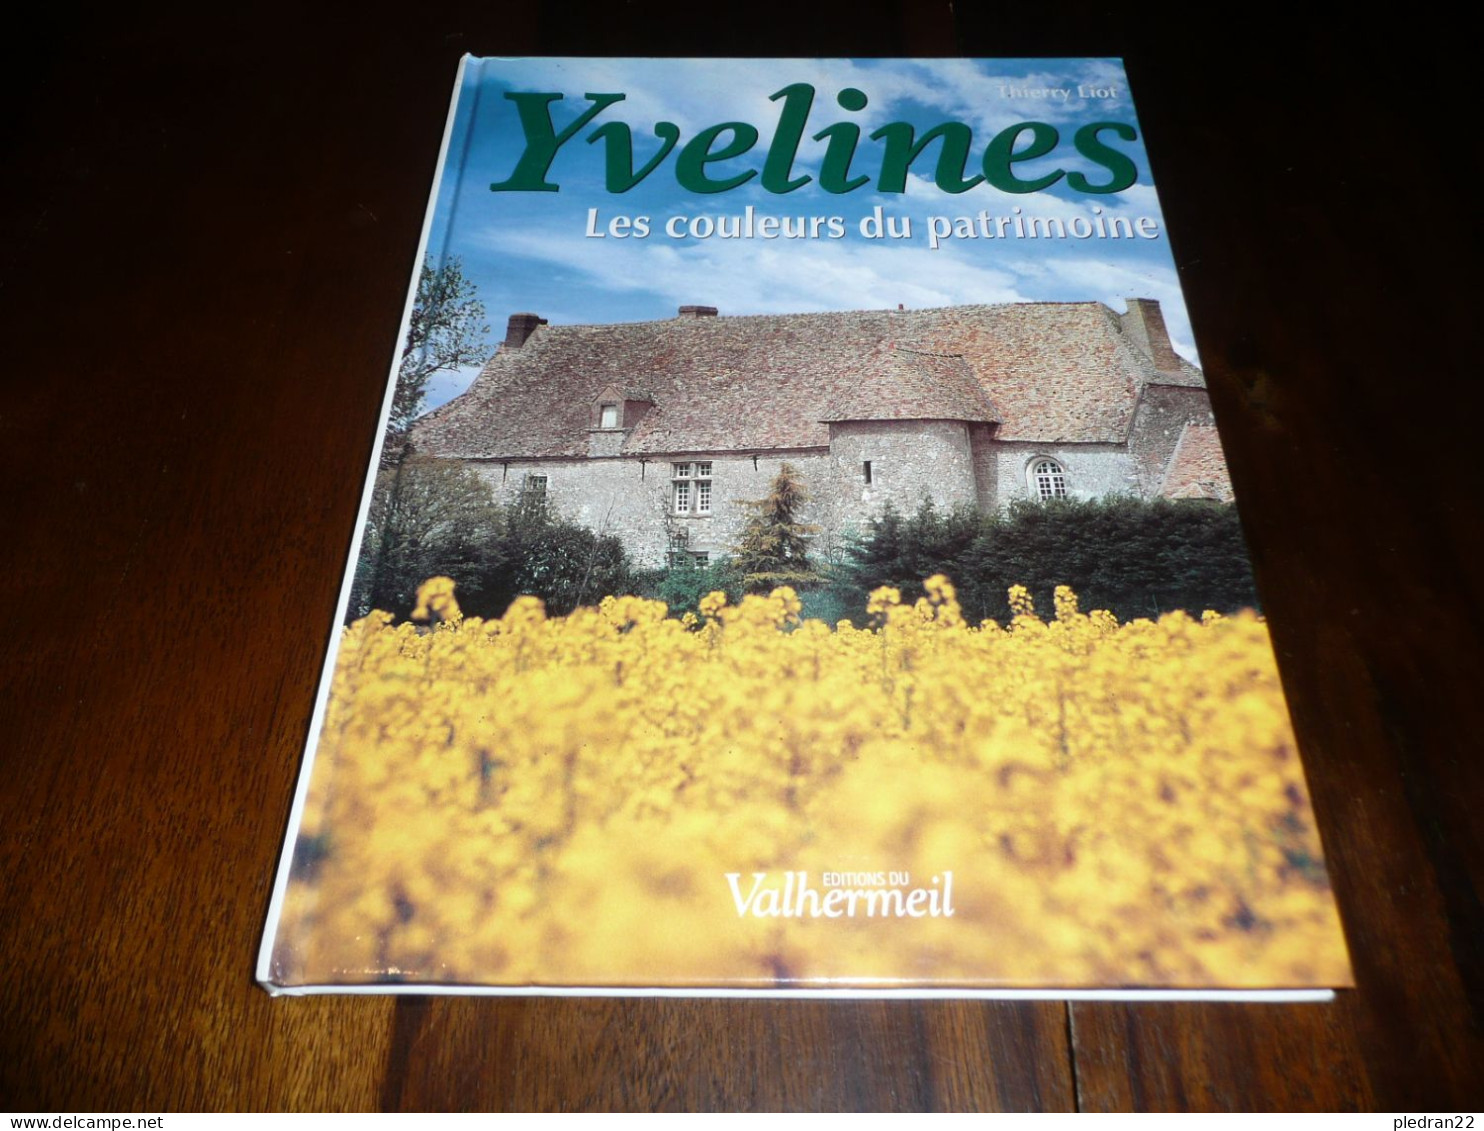 ILE DE FRANCE SEINE ET OISE THIERRY LIOT YVELINES LES COULEURS DU PATRIMOINE EDITIONS DU VALHERMEIL 1999 - Bretagne